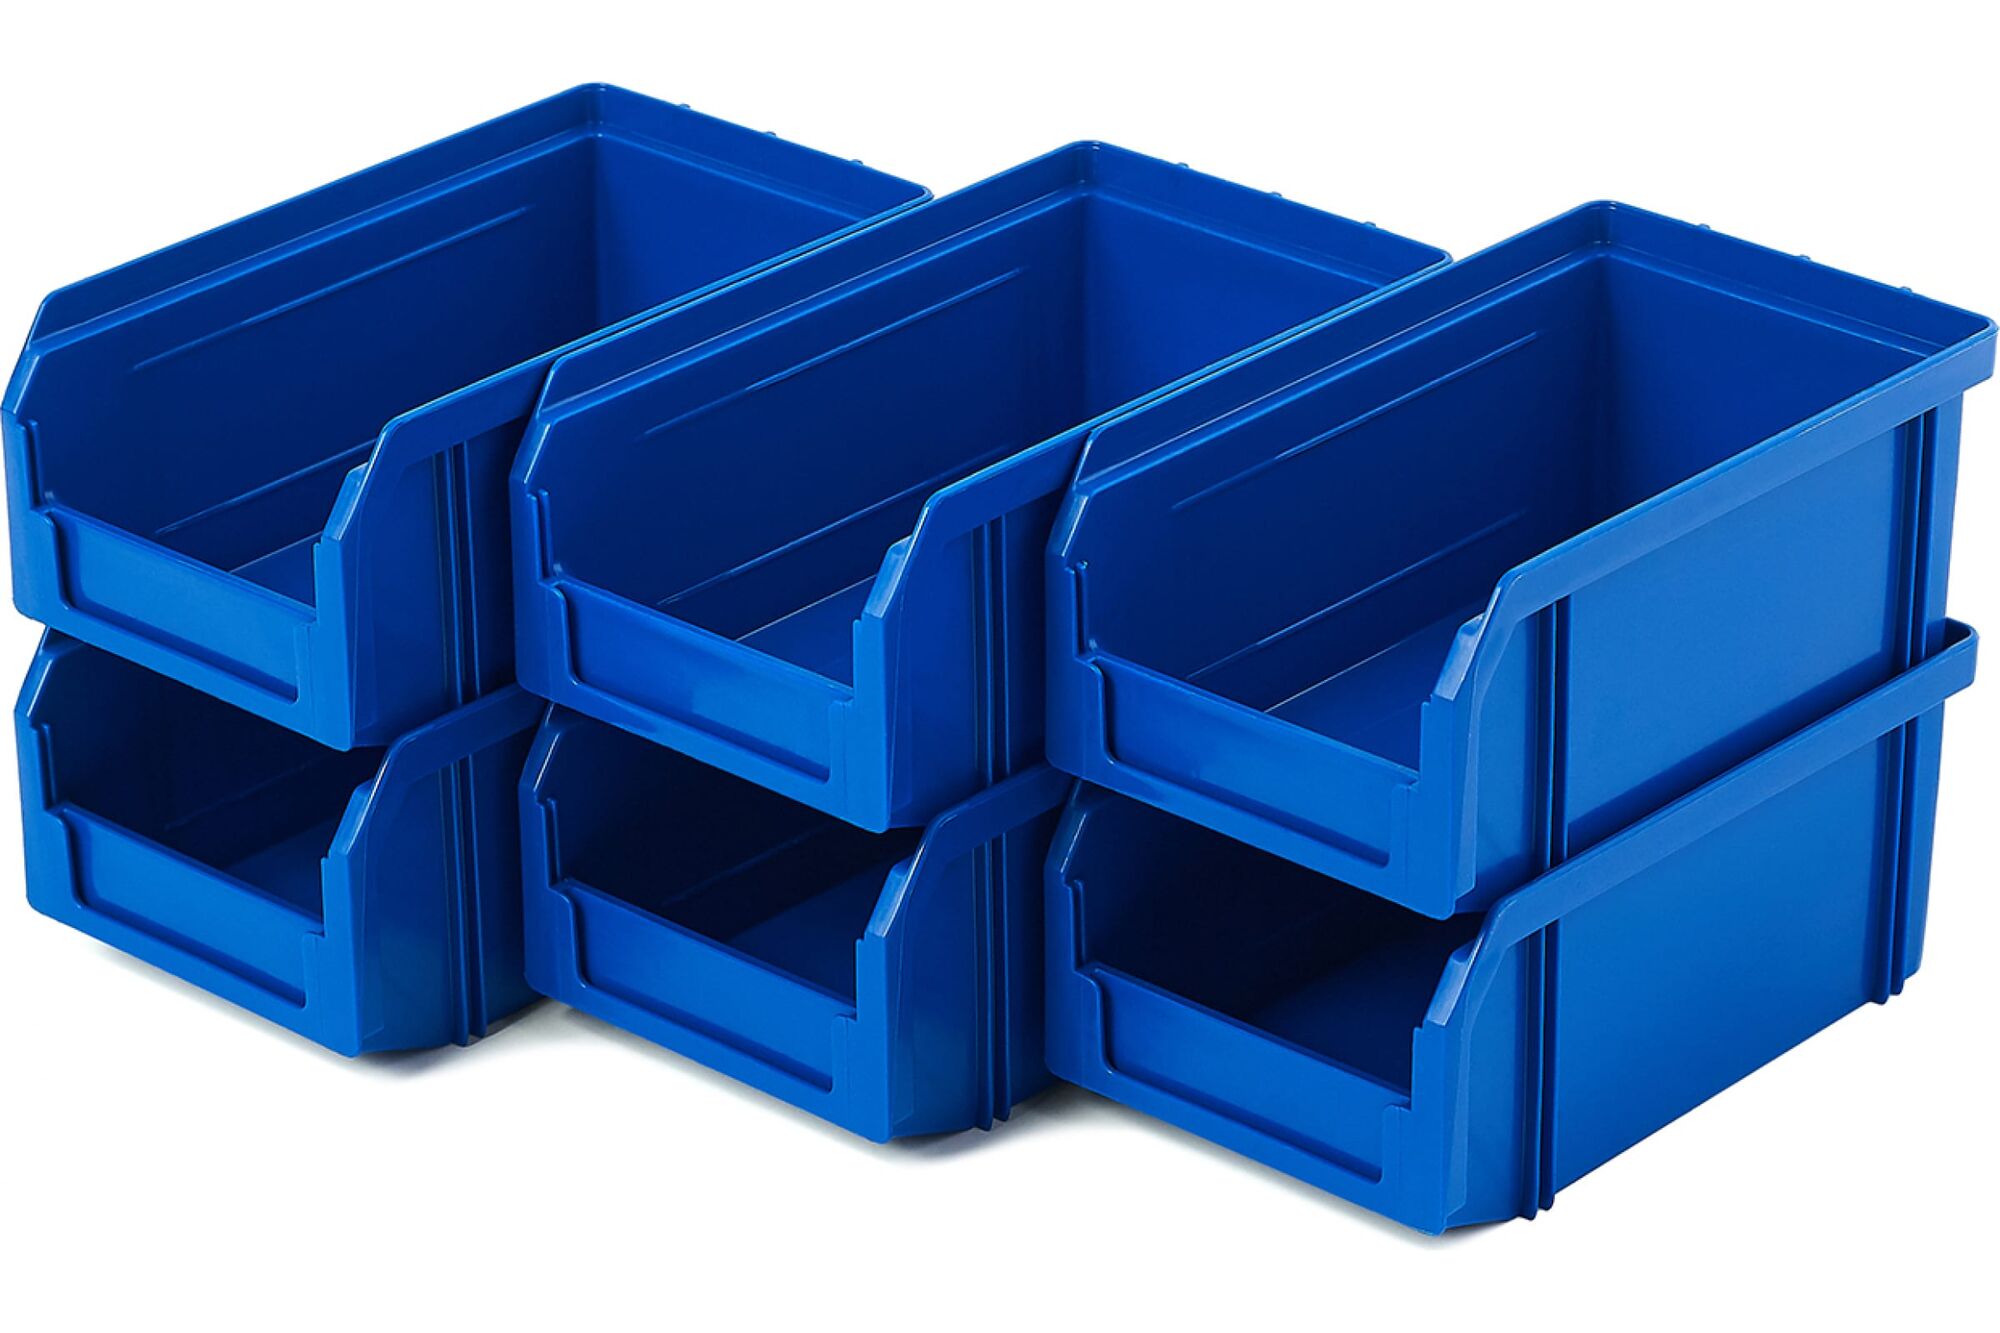 Пластиковый ящик СТЕЛЛА-ТЕХНИК комплект 6 штук V-1-К6-синий